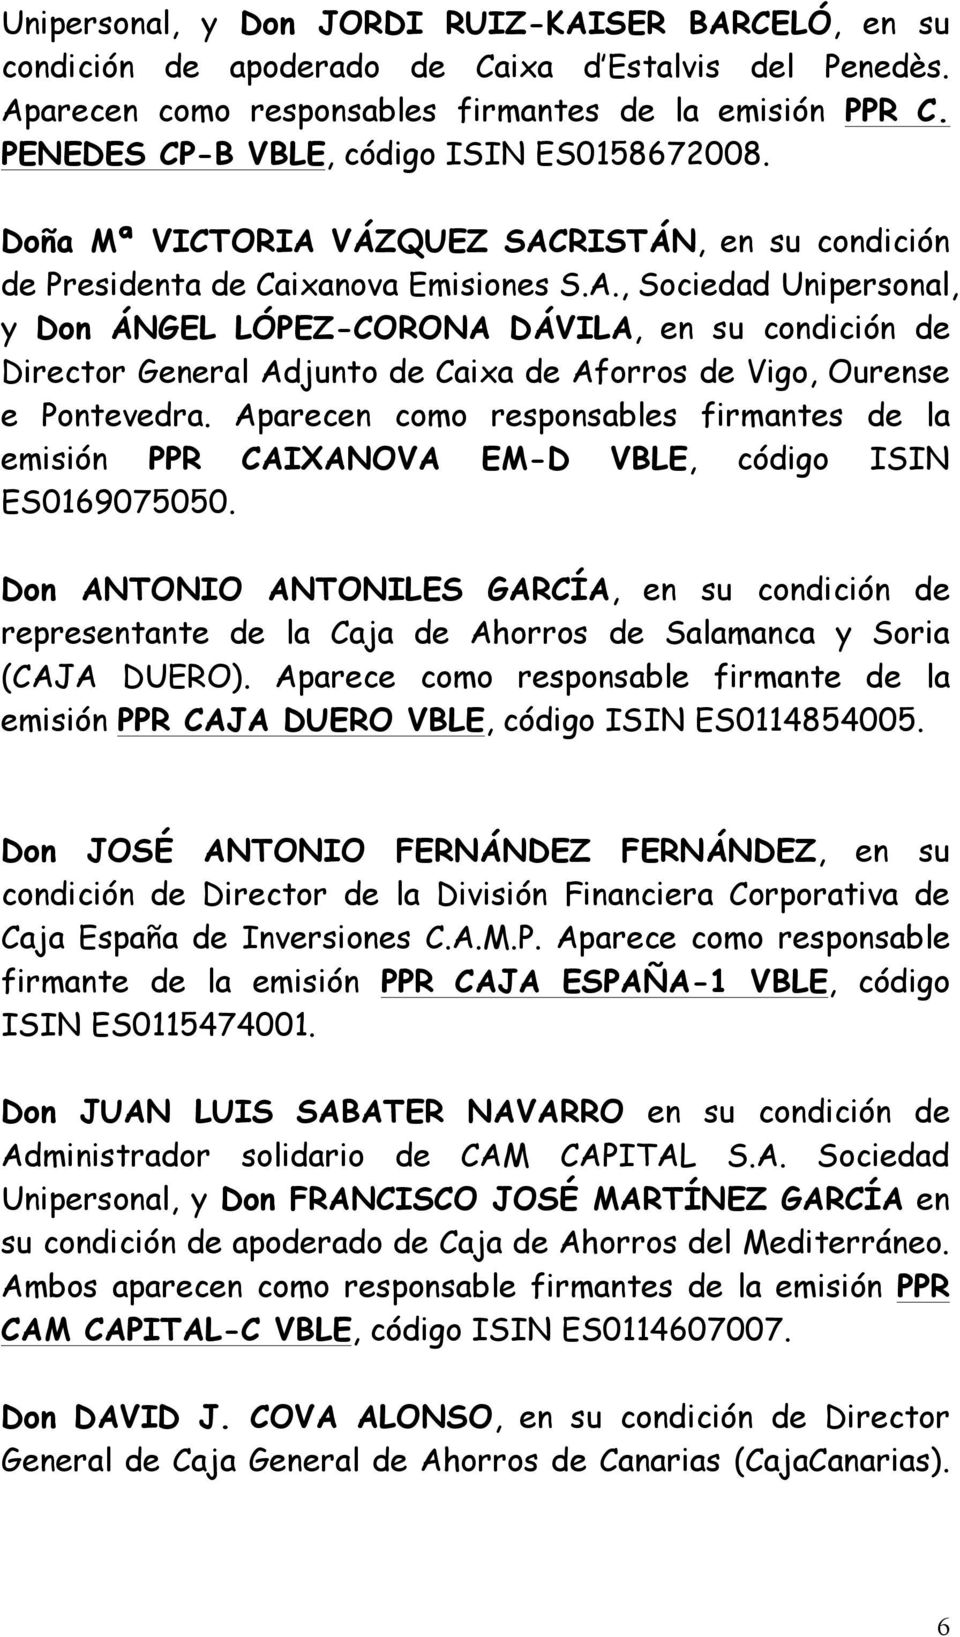 VÁZQUEZ SACRISTÁN, en su condición de Presidenta de Caixanova Emisiones S.A., Sociedad Unipersonal, y Don ÁNGEL LÓPEZ-CORONA DÁVILA, en su condición de Director General Adjunto de Caixa de Aforros de Vigo, Ourense e Pontevedra.